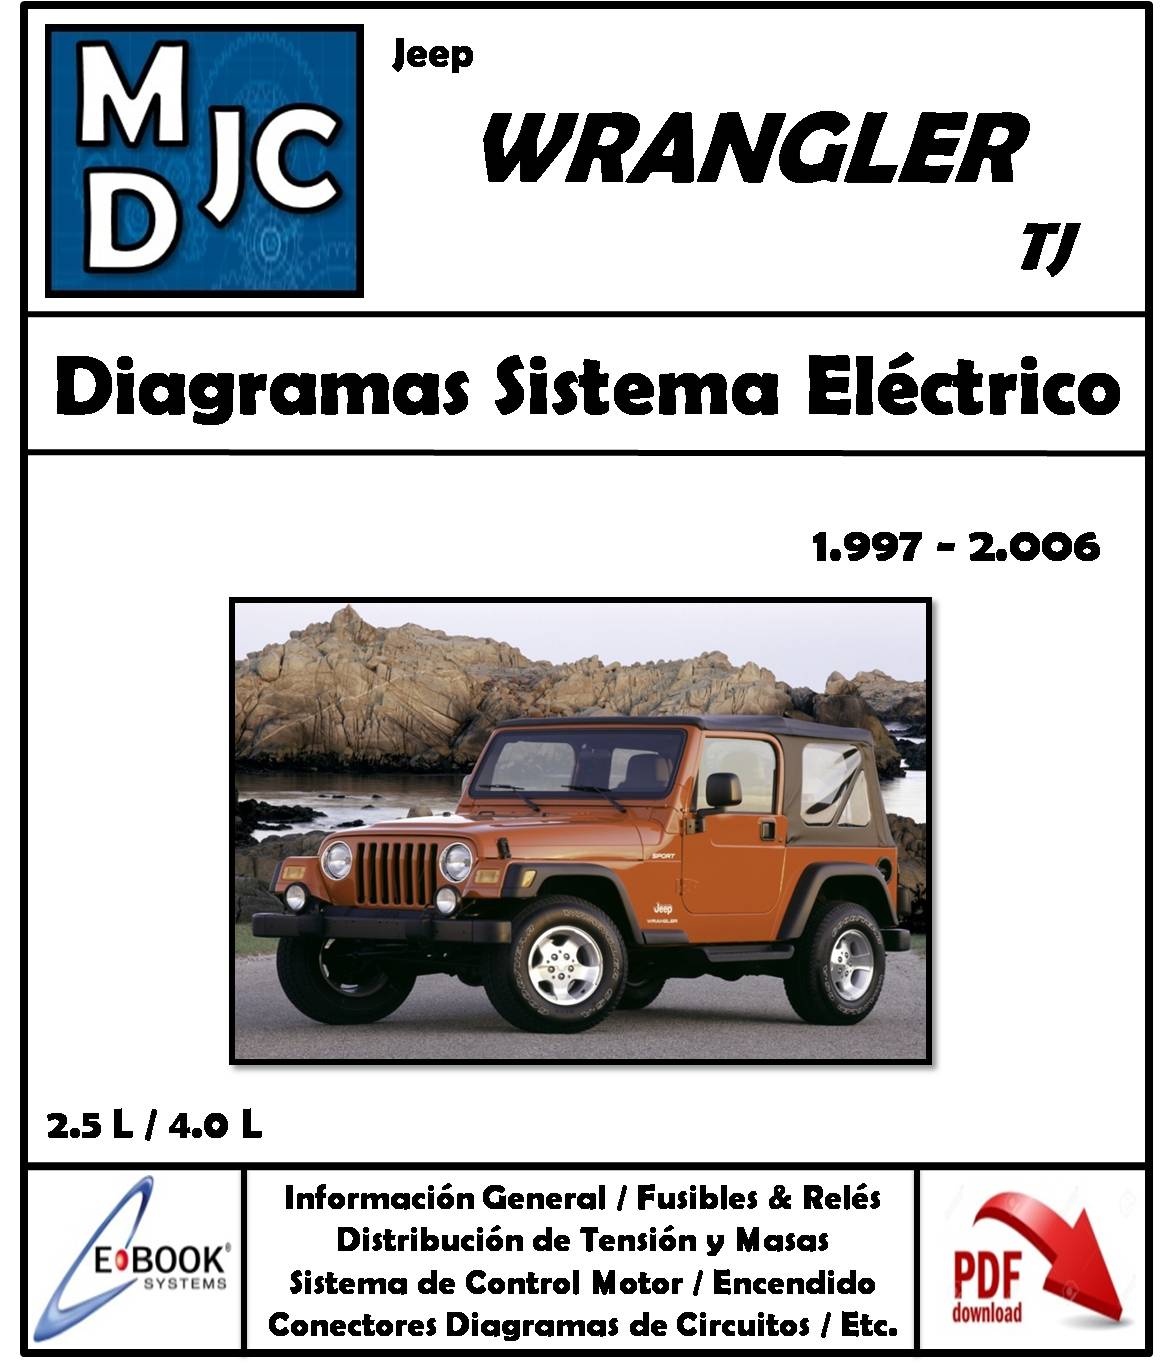 Diagramas de Cableado Sistema Eléctrico Jeep Wrangler ( TJ ) 1997 - 2006